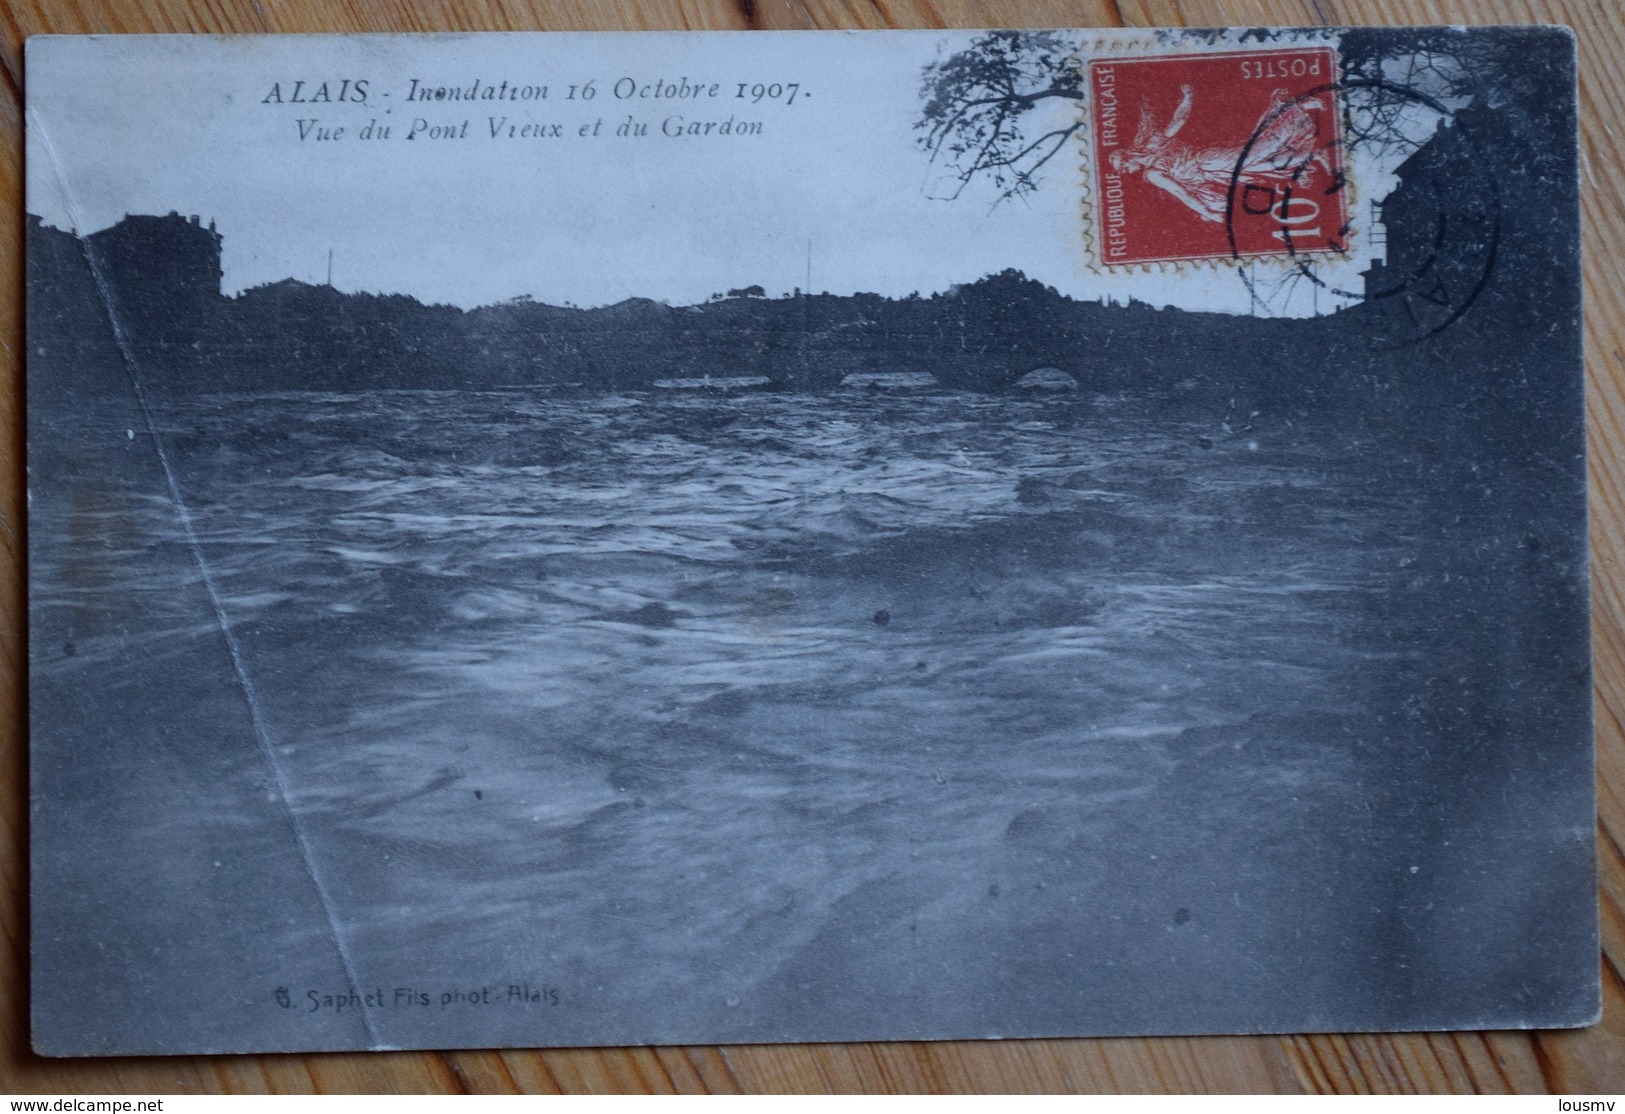 30 : Alès / Alais - Inondation Du 16 Octobre 1907 - Vue Du Pont Vieux Et Du Gardon - Pli D'angle - (n°10020) - Alès